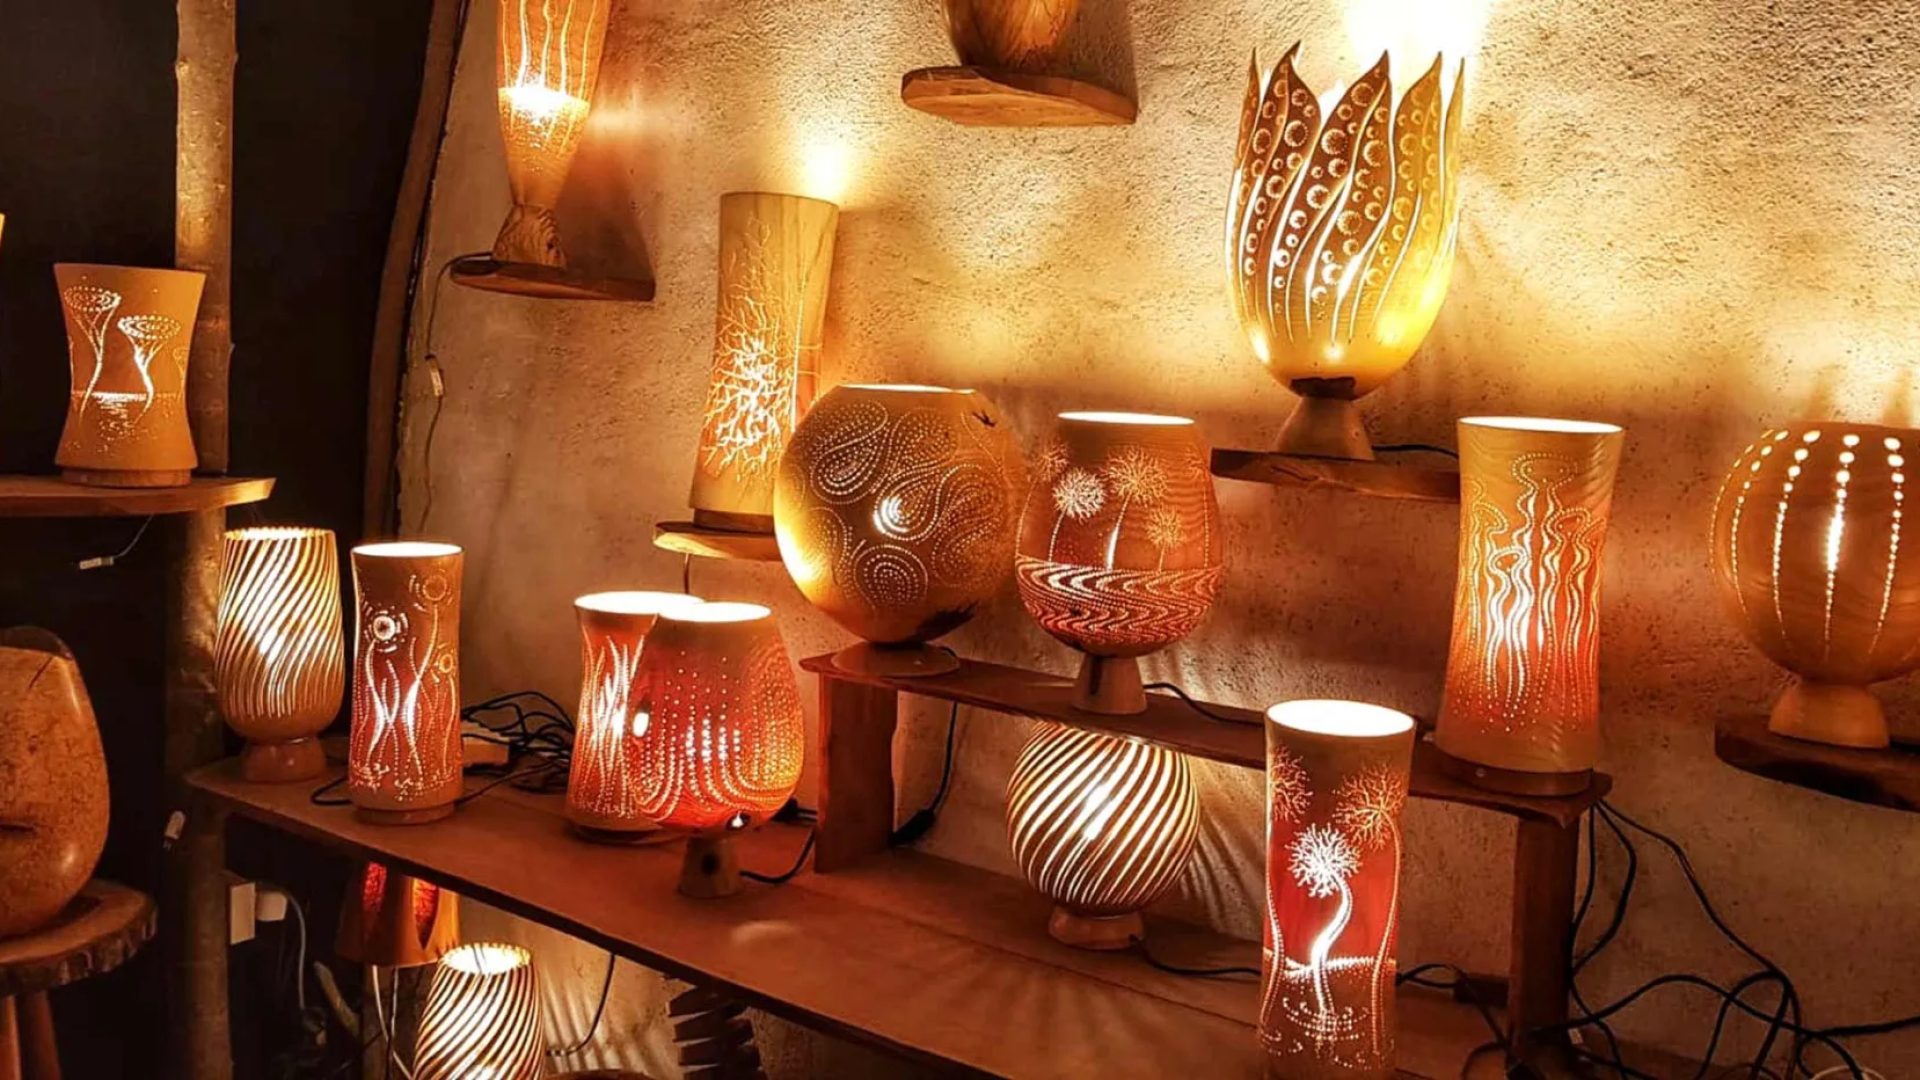 Regalos hechos a mano "Made in Haute-Loire" gracias a artistas y artesanos locales iluminación de madera